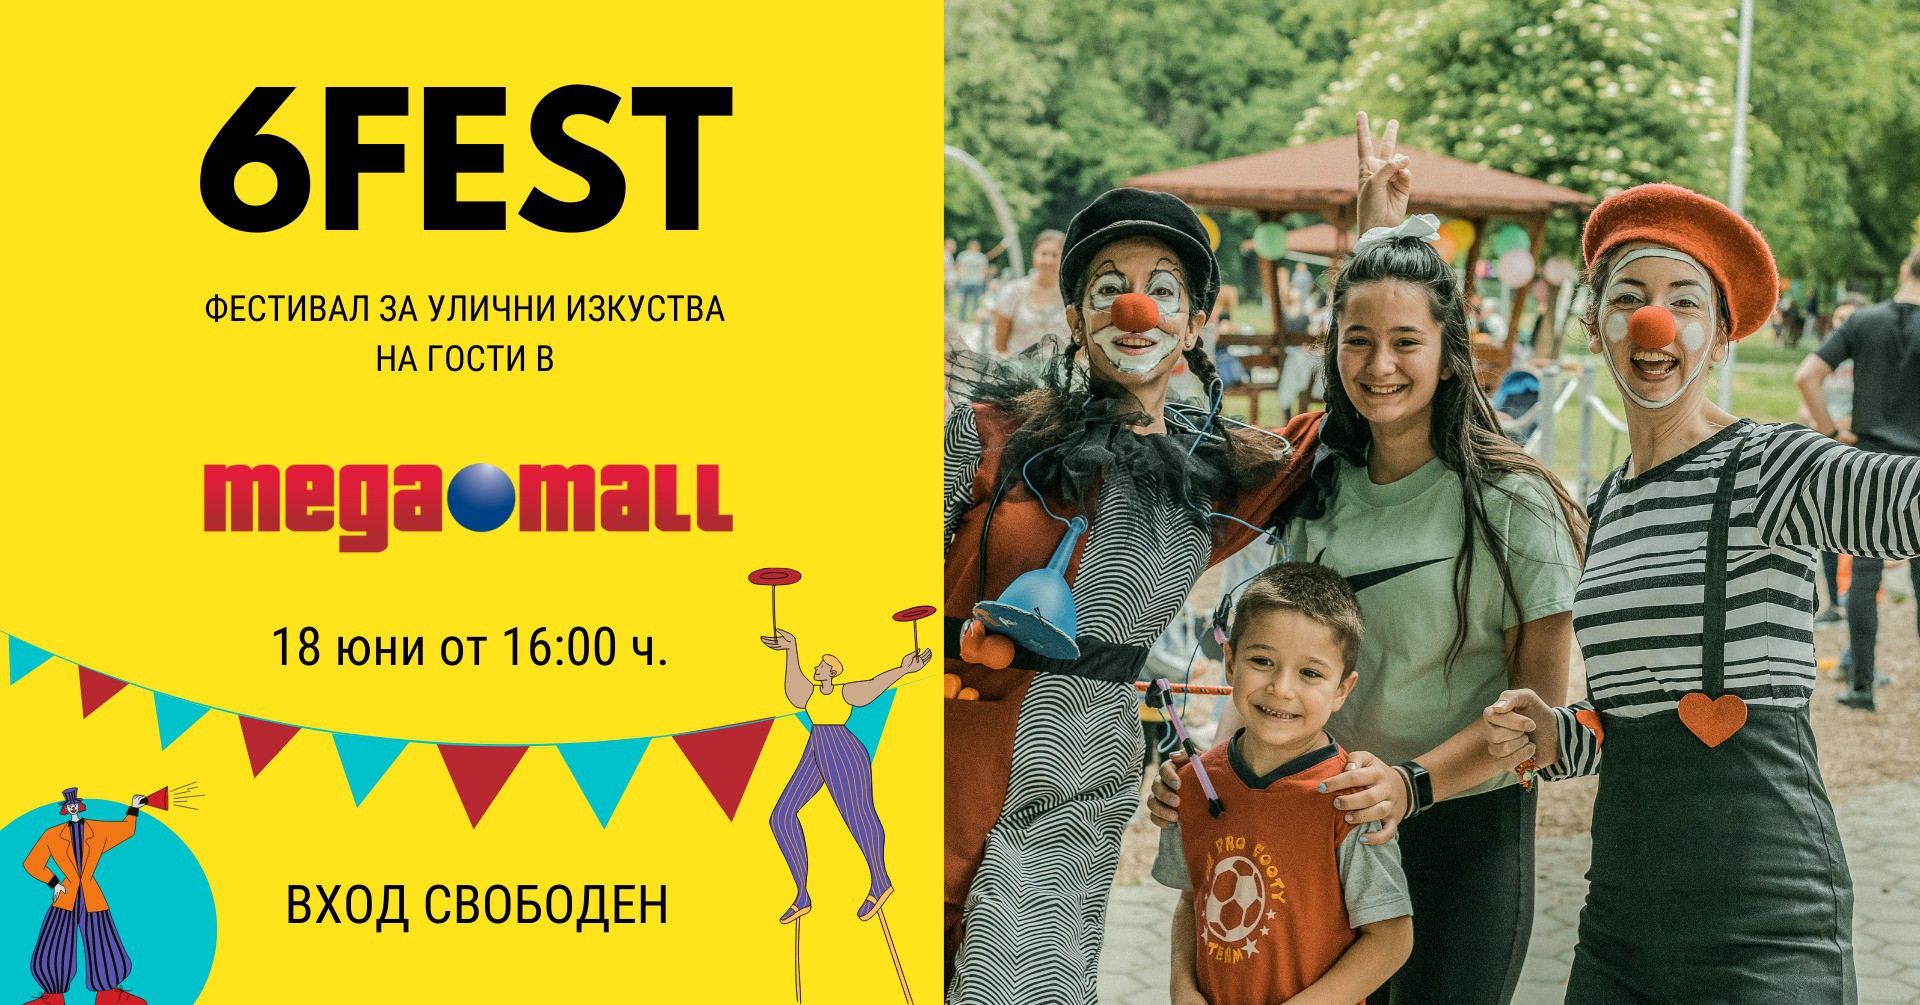 Фестивал за улични изкуства 6Fest на гости в Мега Мол София